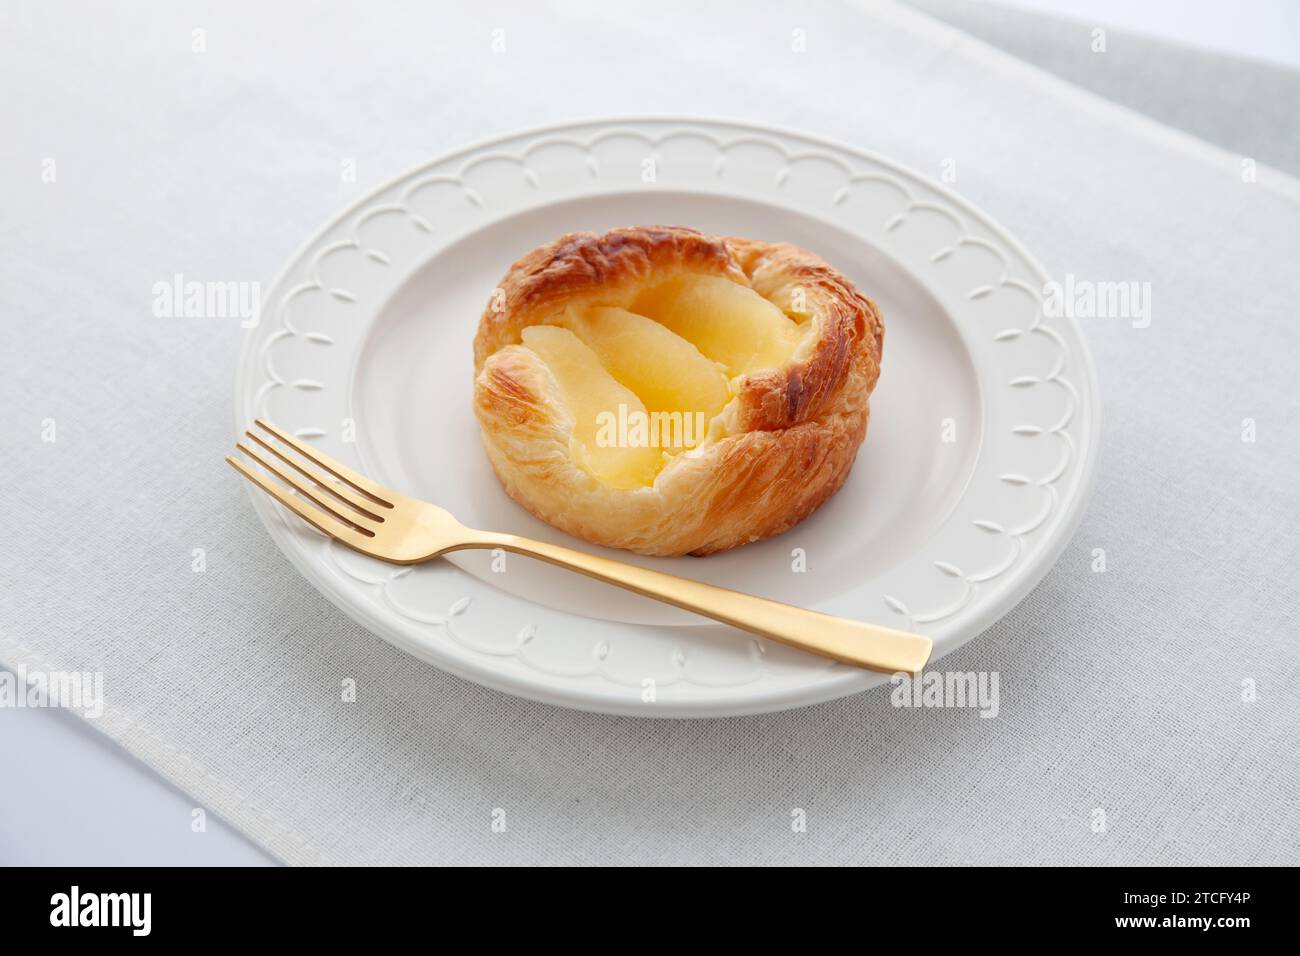 tarte aux pommes sur assiette sur table Banque D'Images